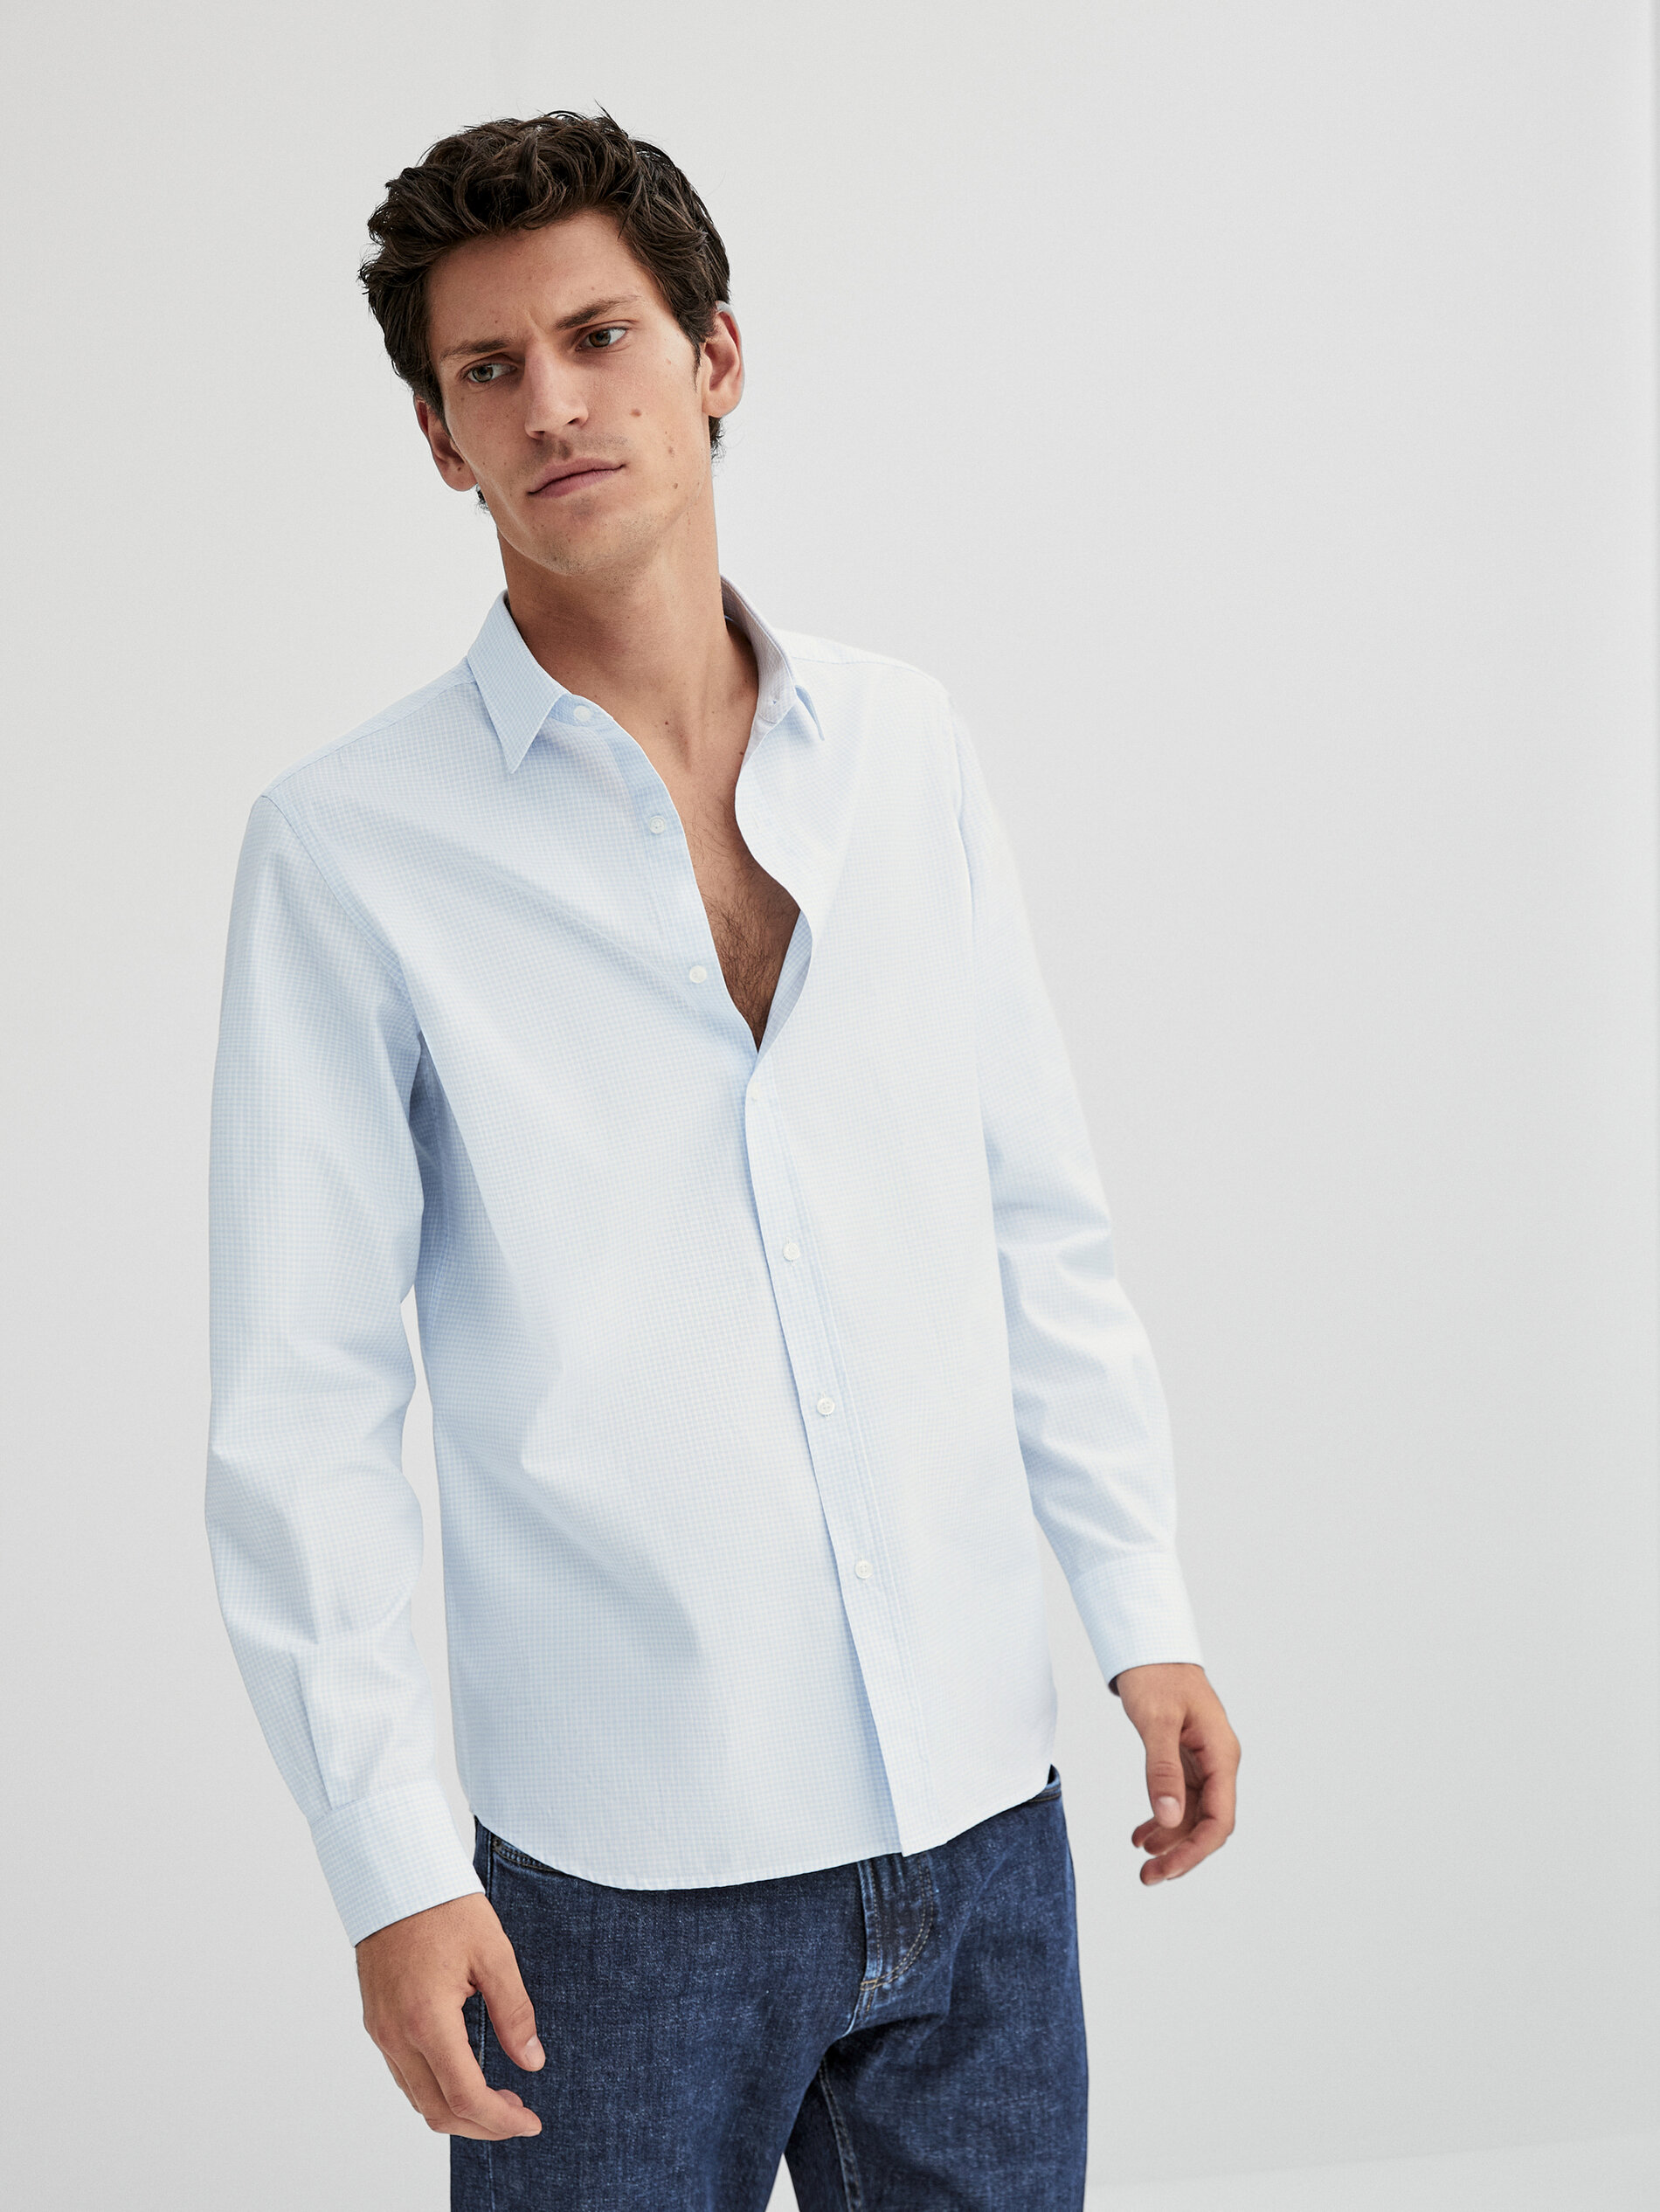 MODA UOMO Camicie & T-shirt Tailored fit Blu M Massimo Dutti Camicia sconto 58% 